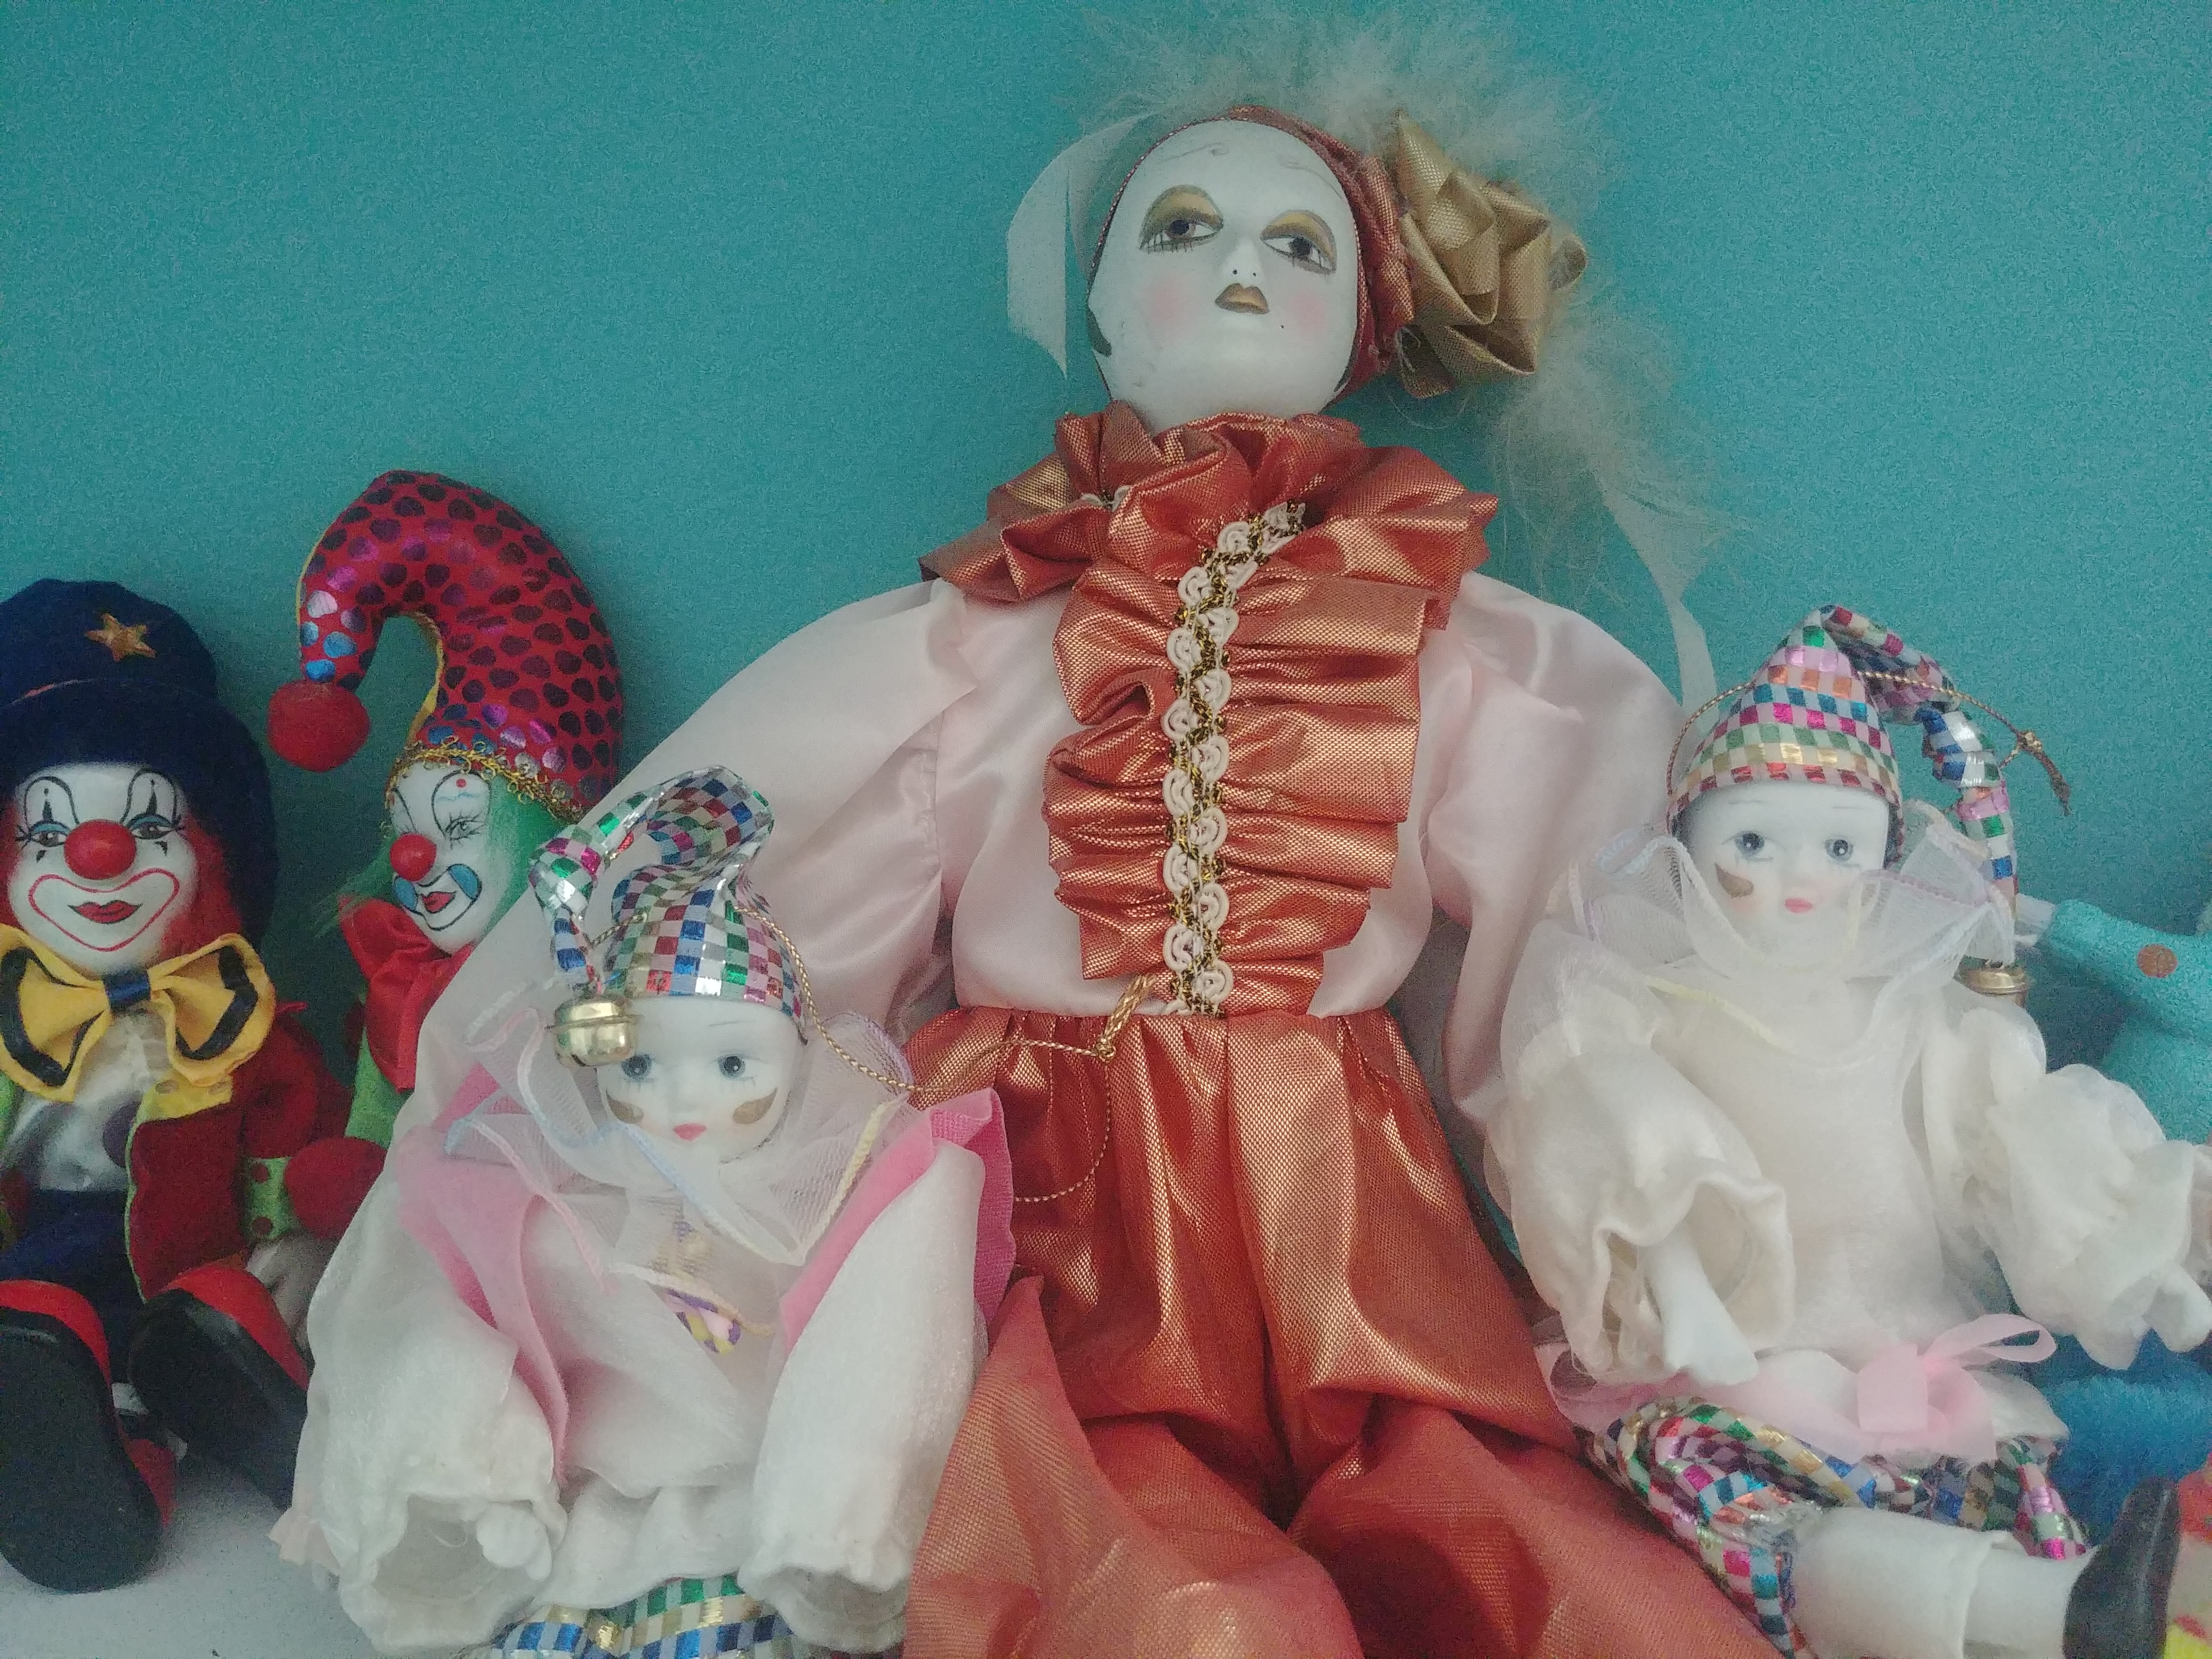 three clown dolls